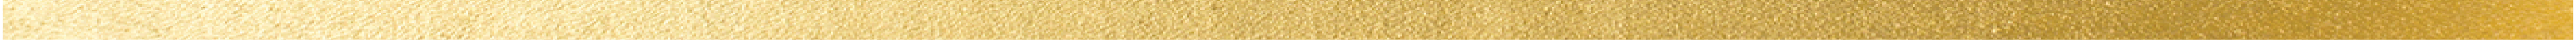 gold divider-11